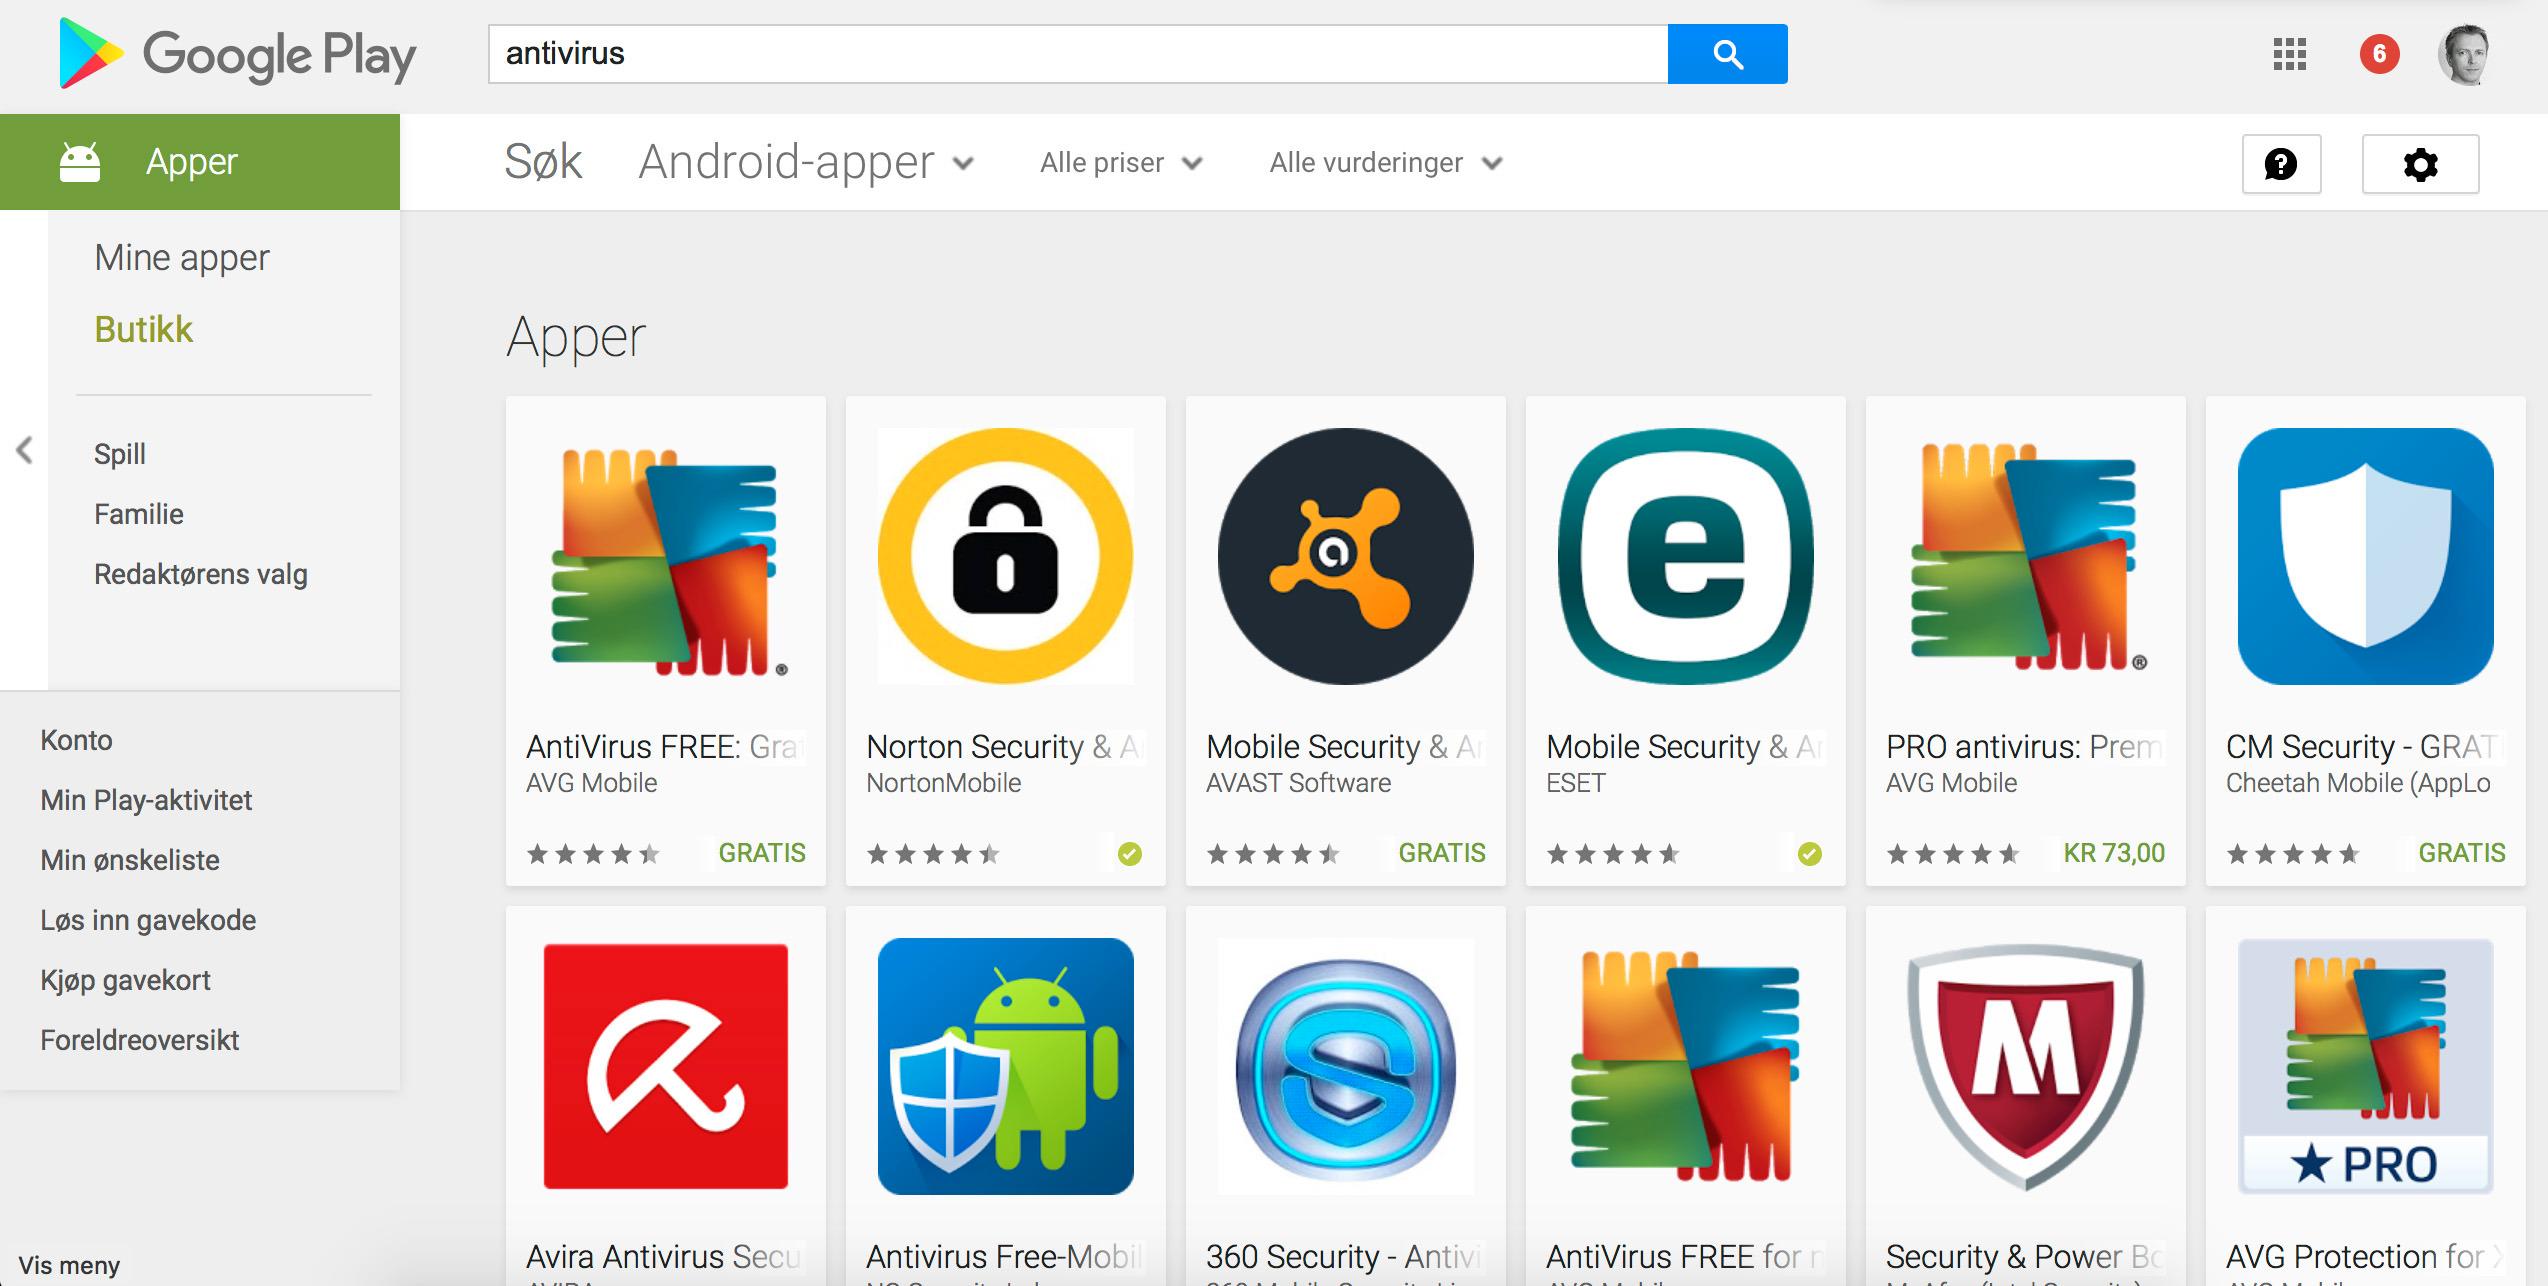 Utvalget av antivirusprogrammer på Google Play er ganske stort.